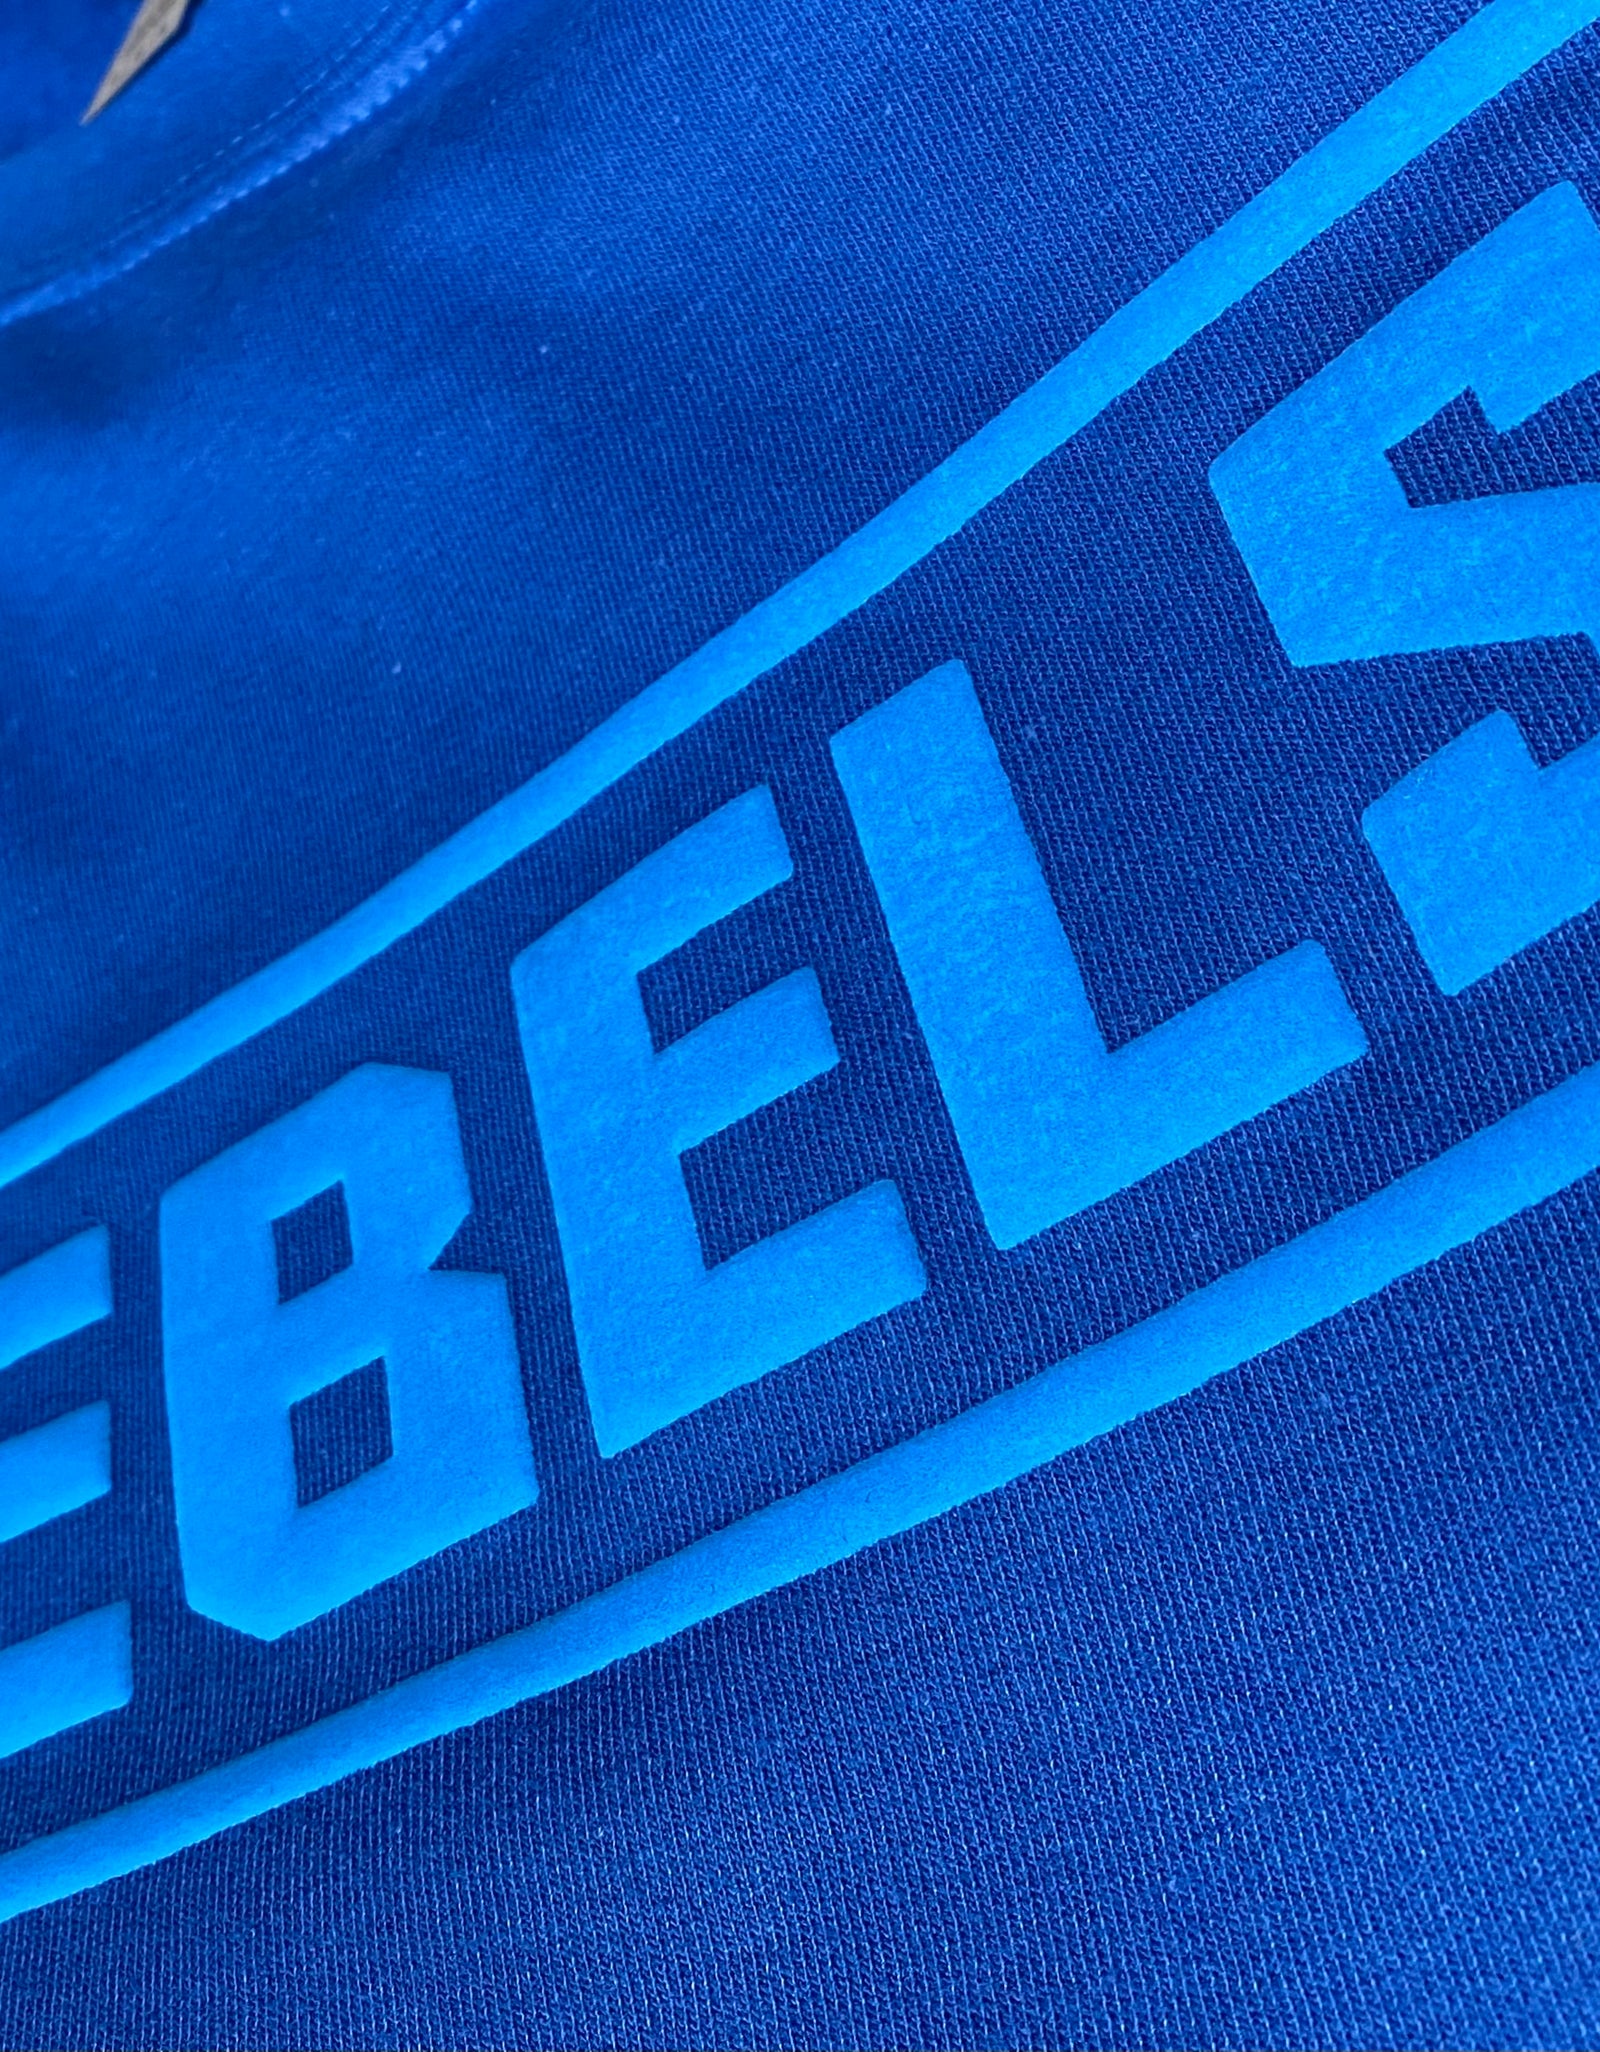 Rebels Puff Design T-shirts ADULT